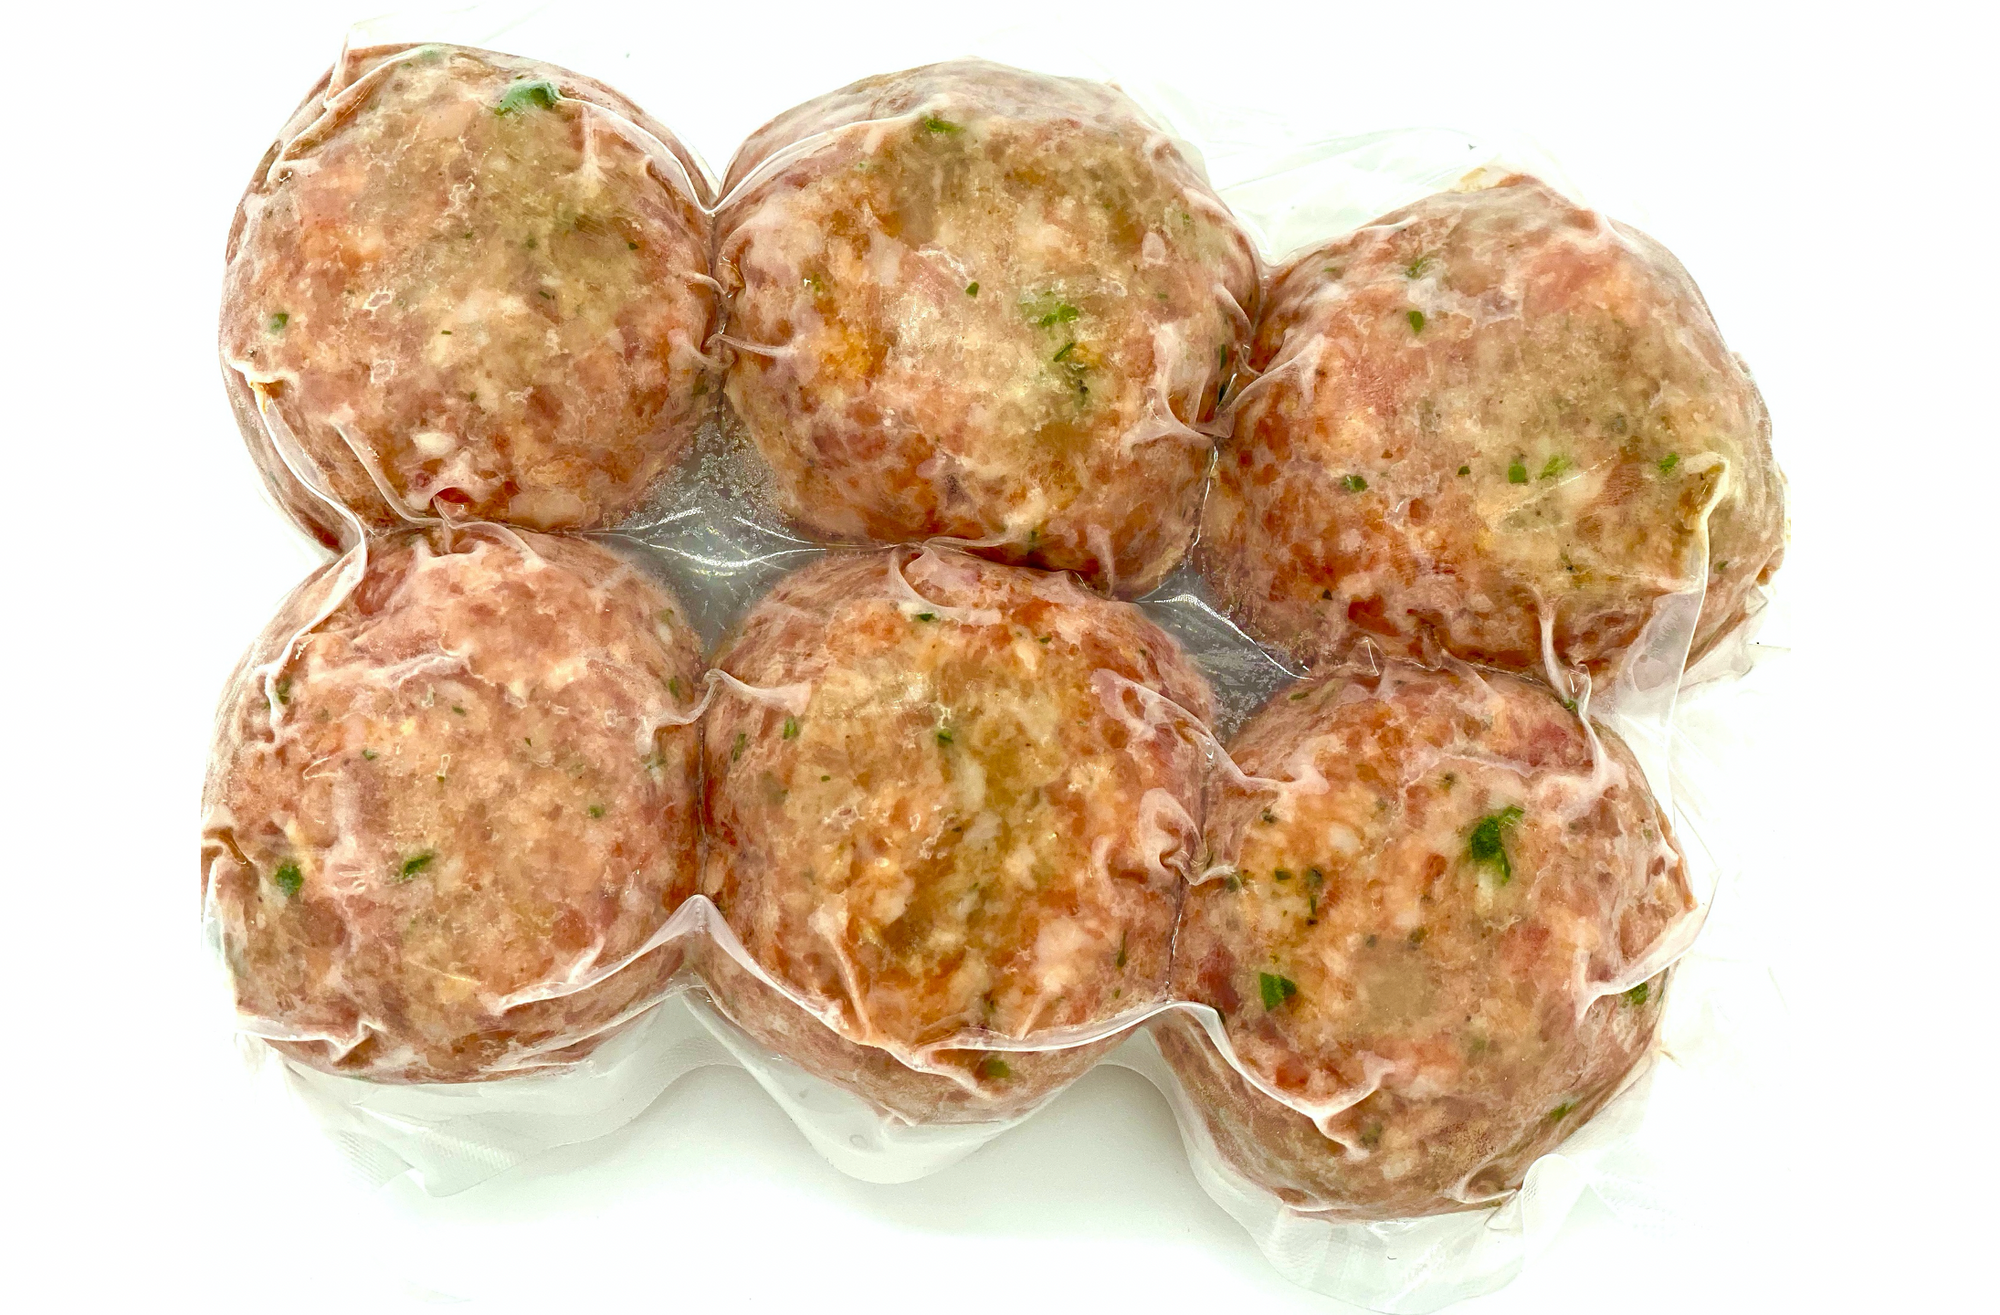 Boulettes de viande par AGA, 6 faites avec du veau, du boeuf et du porc, 720g, surgelées